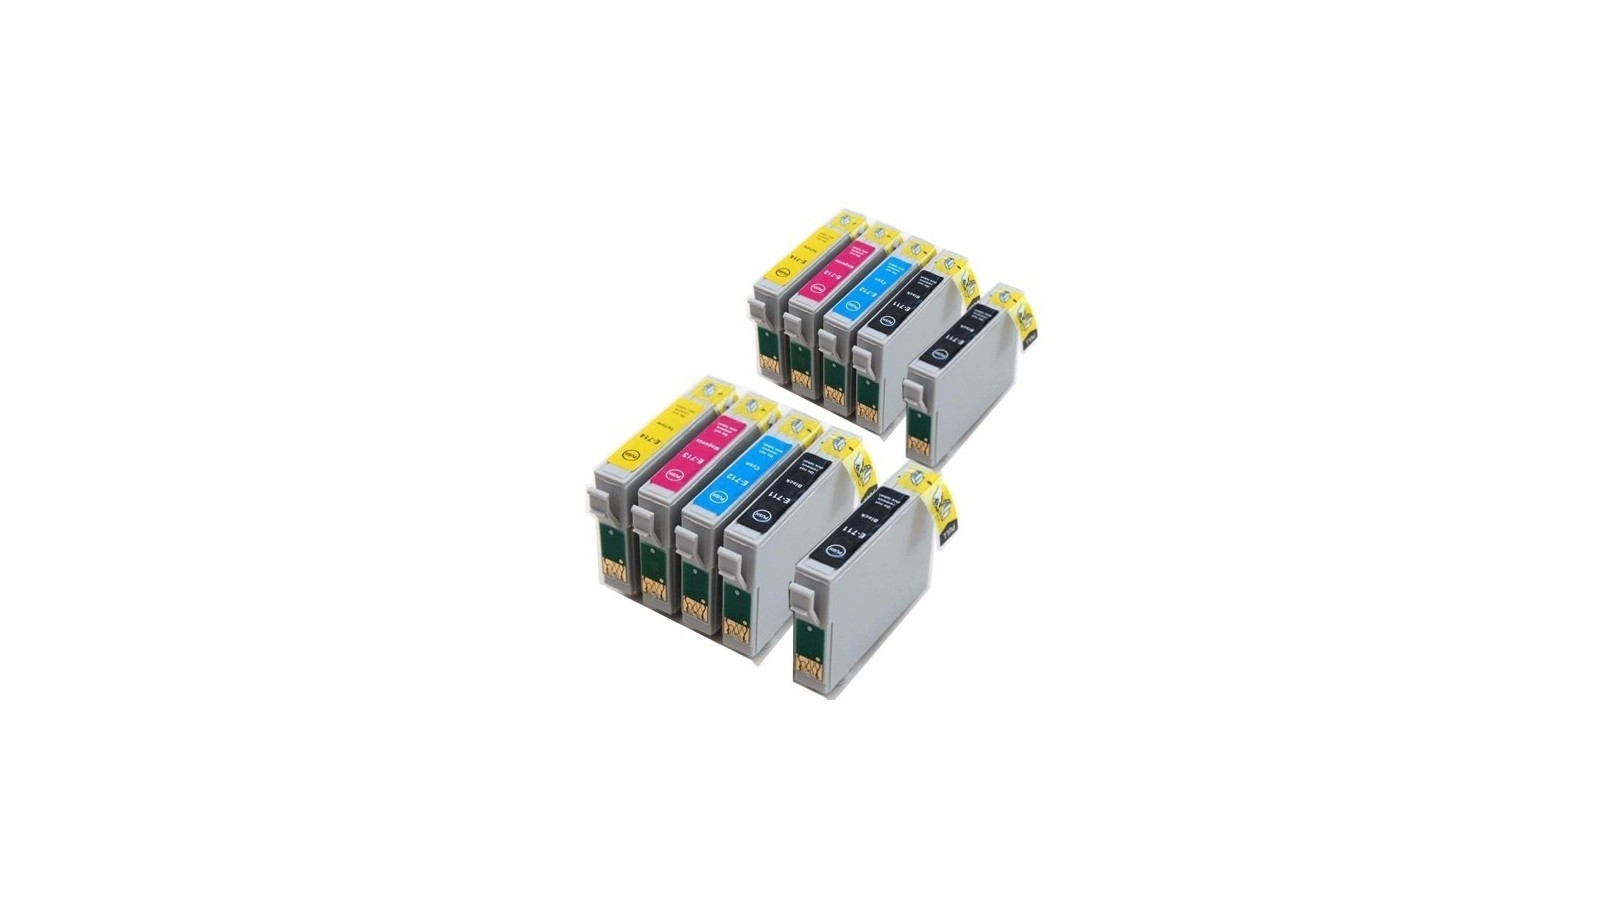 Cartucce Inkjet Multipack per Epson T0711 T0712 T0713 T0714 4BK+2CY+2MA+2YE